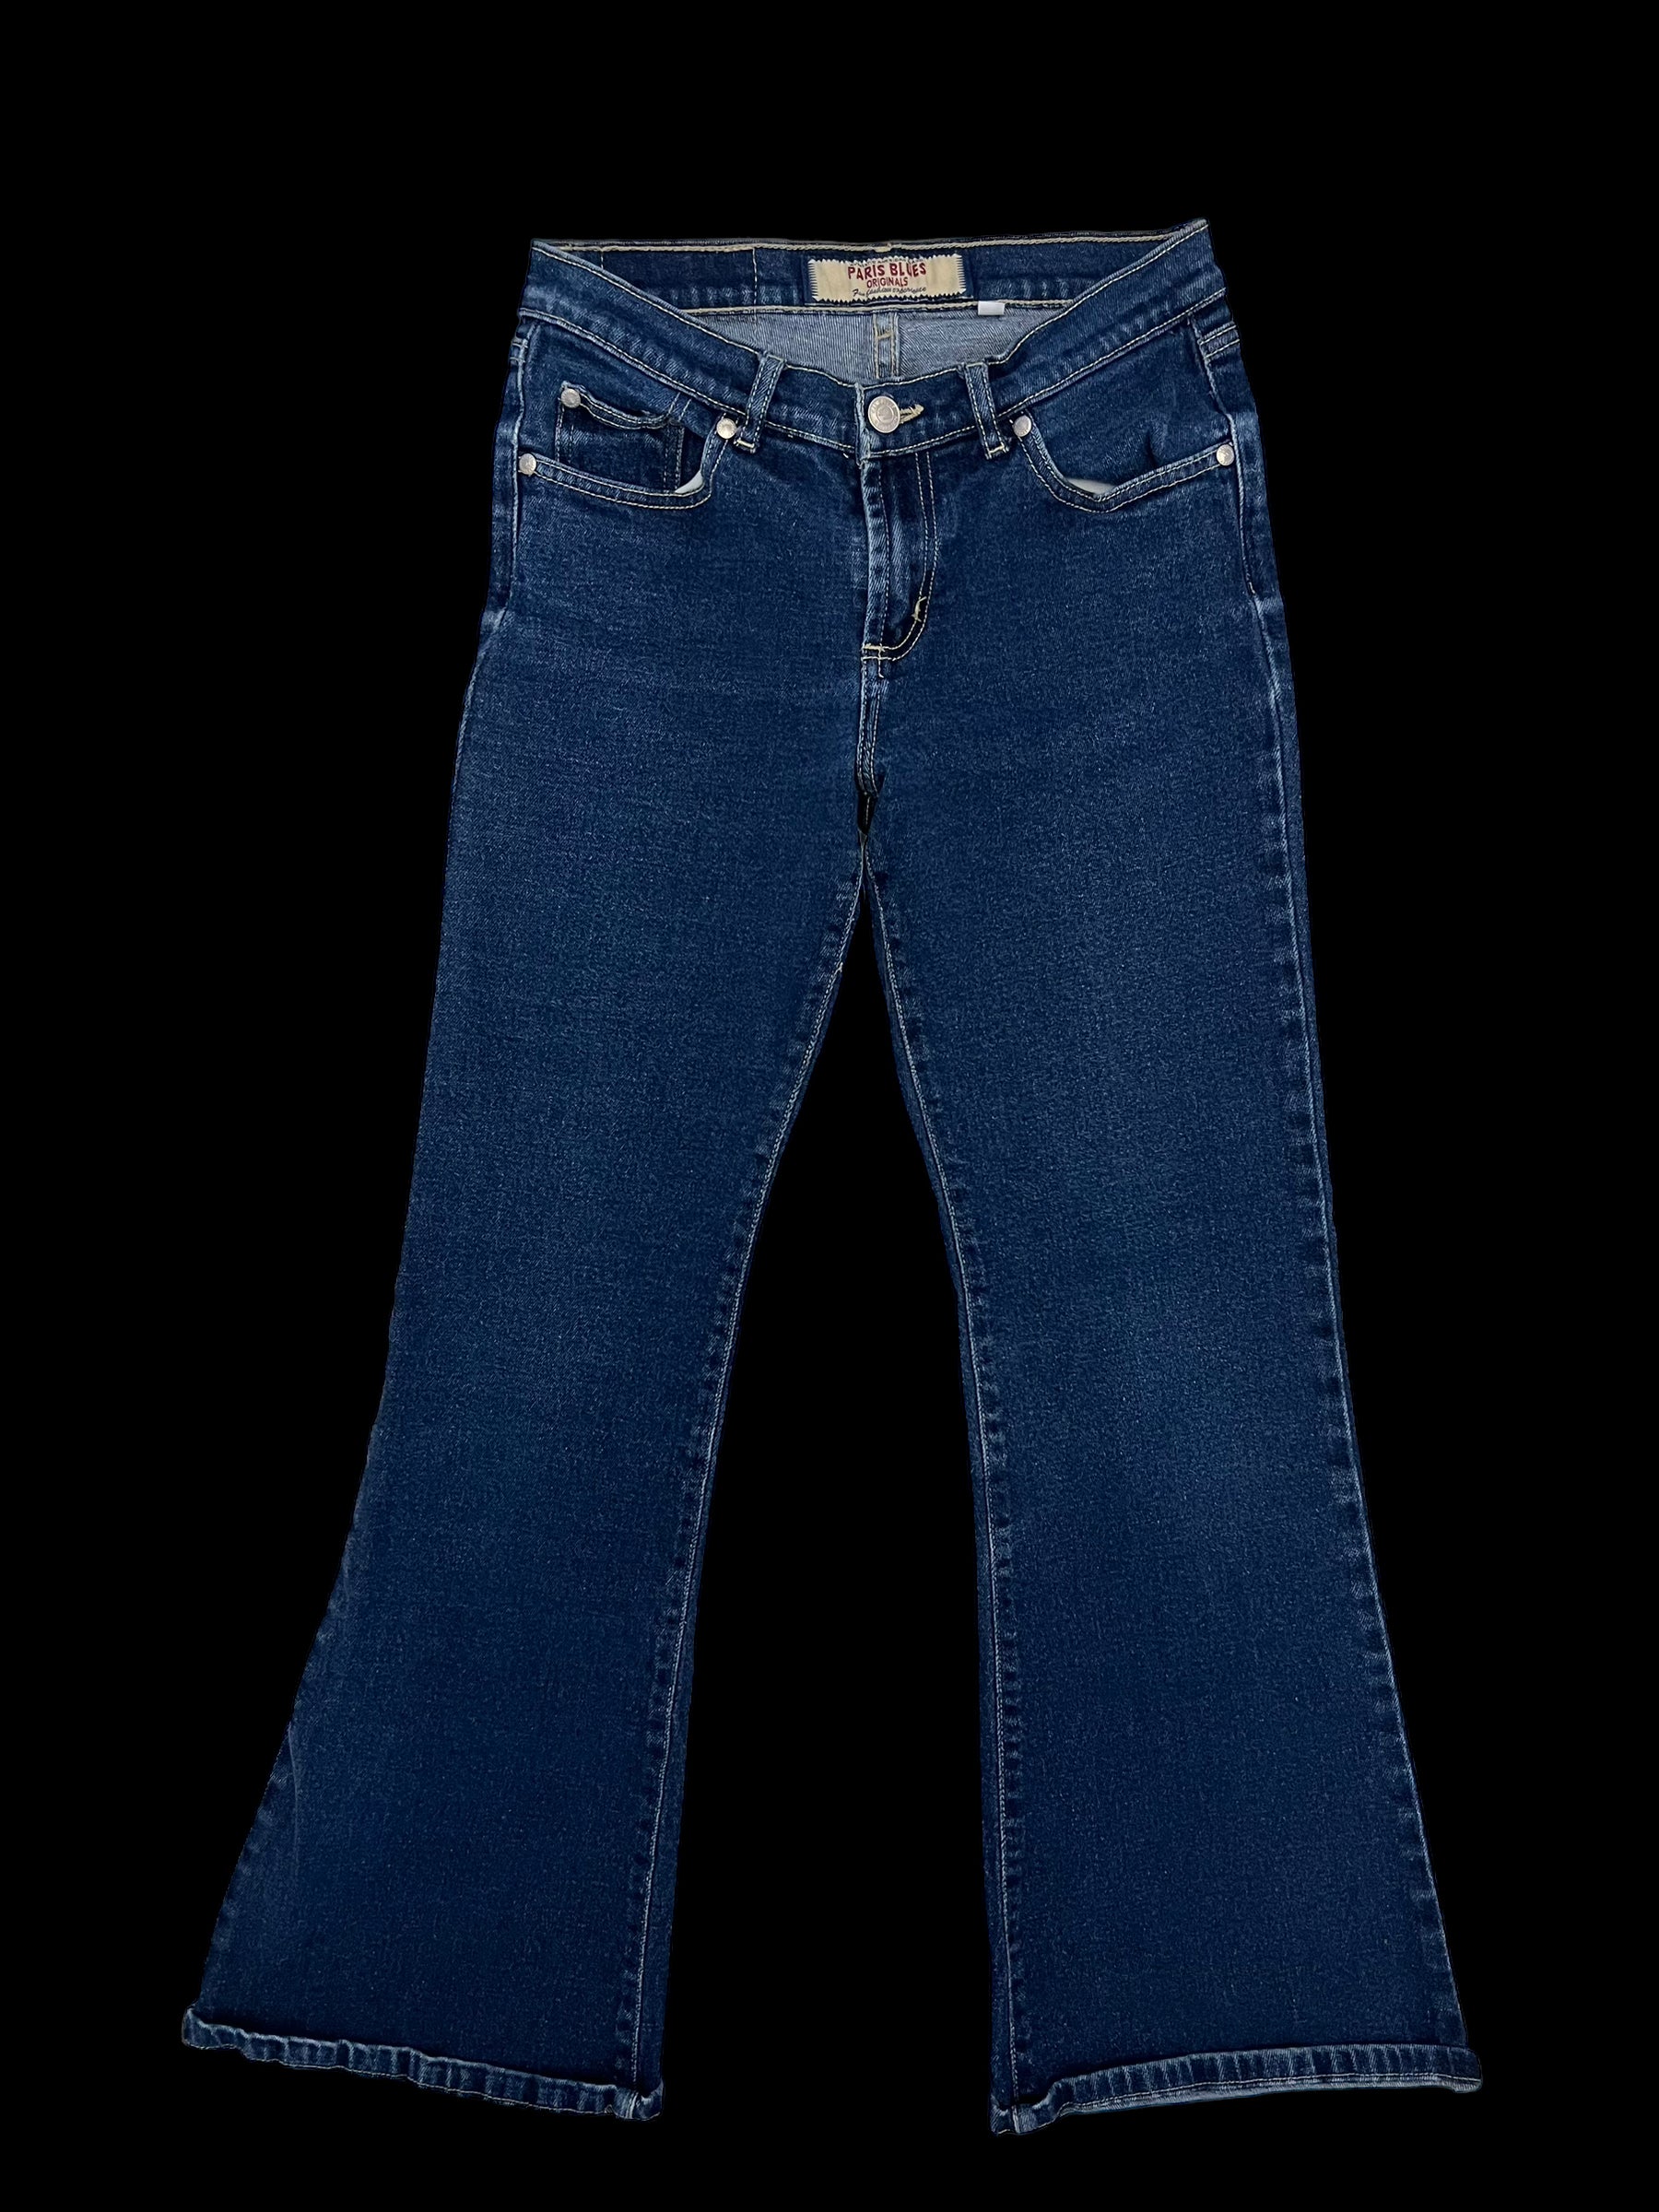 paris blues jeans